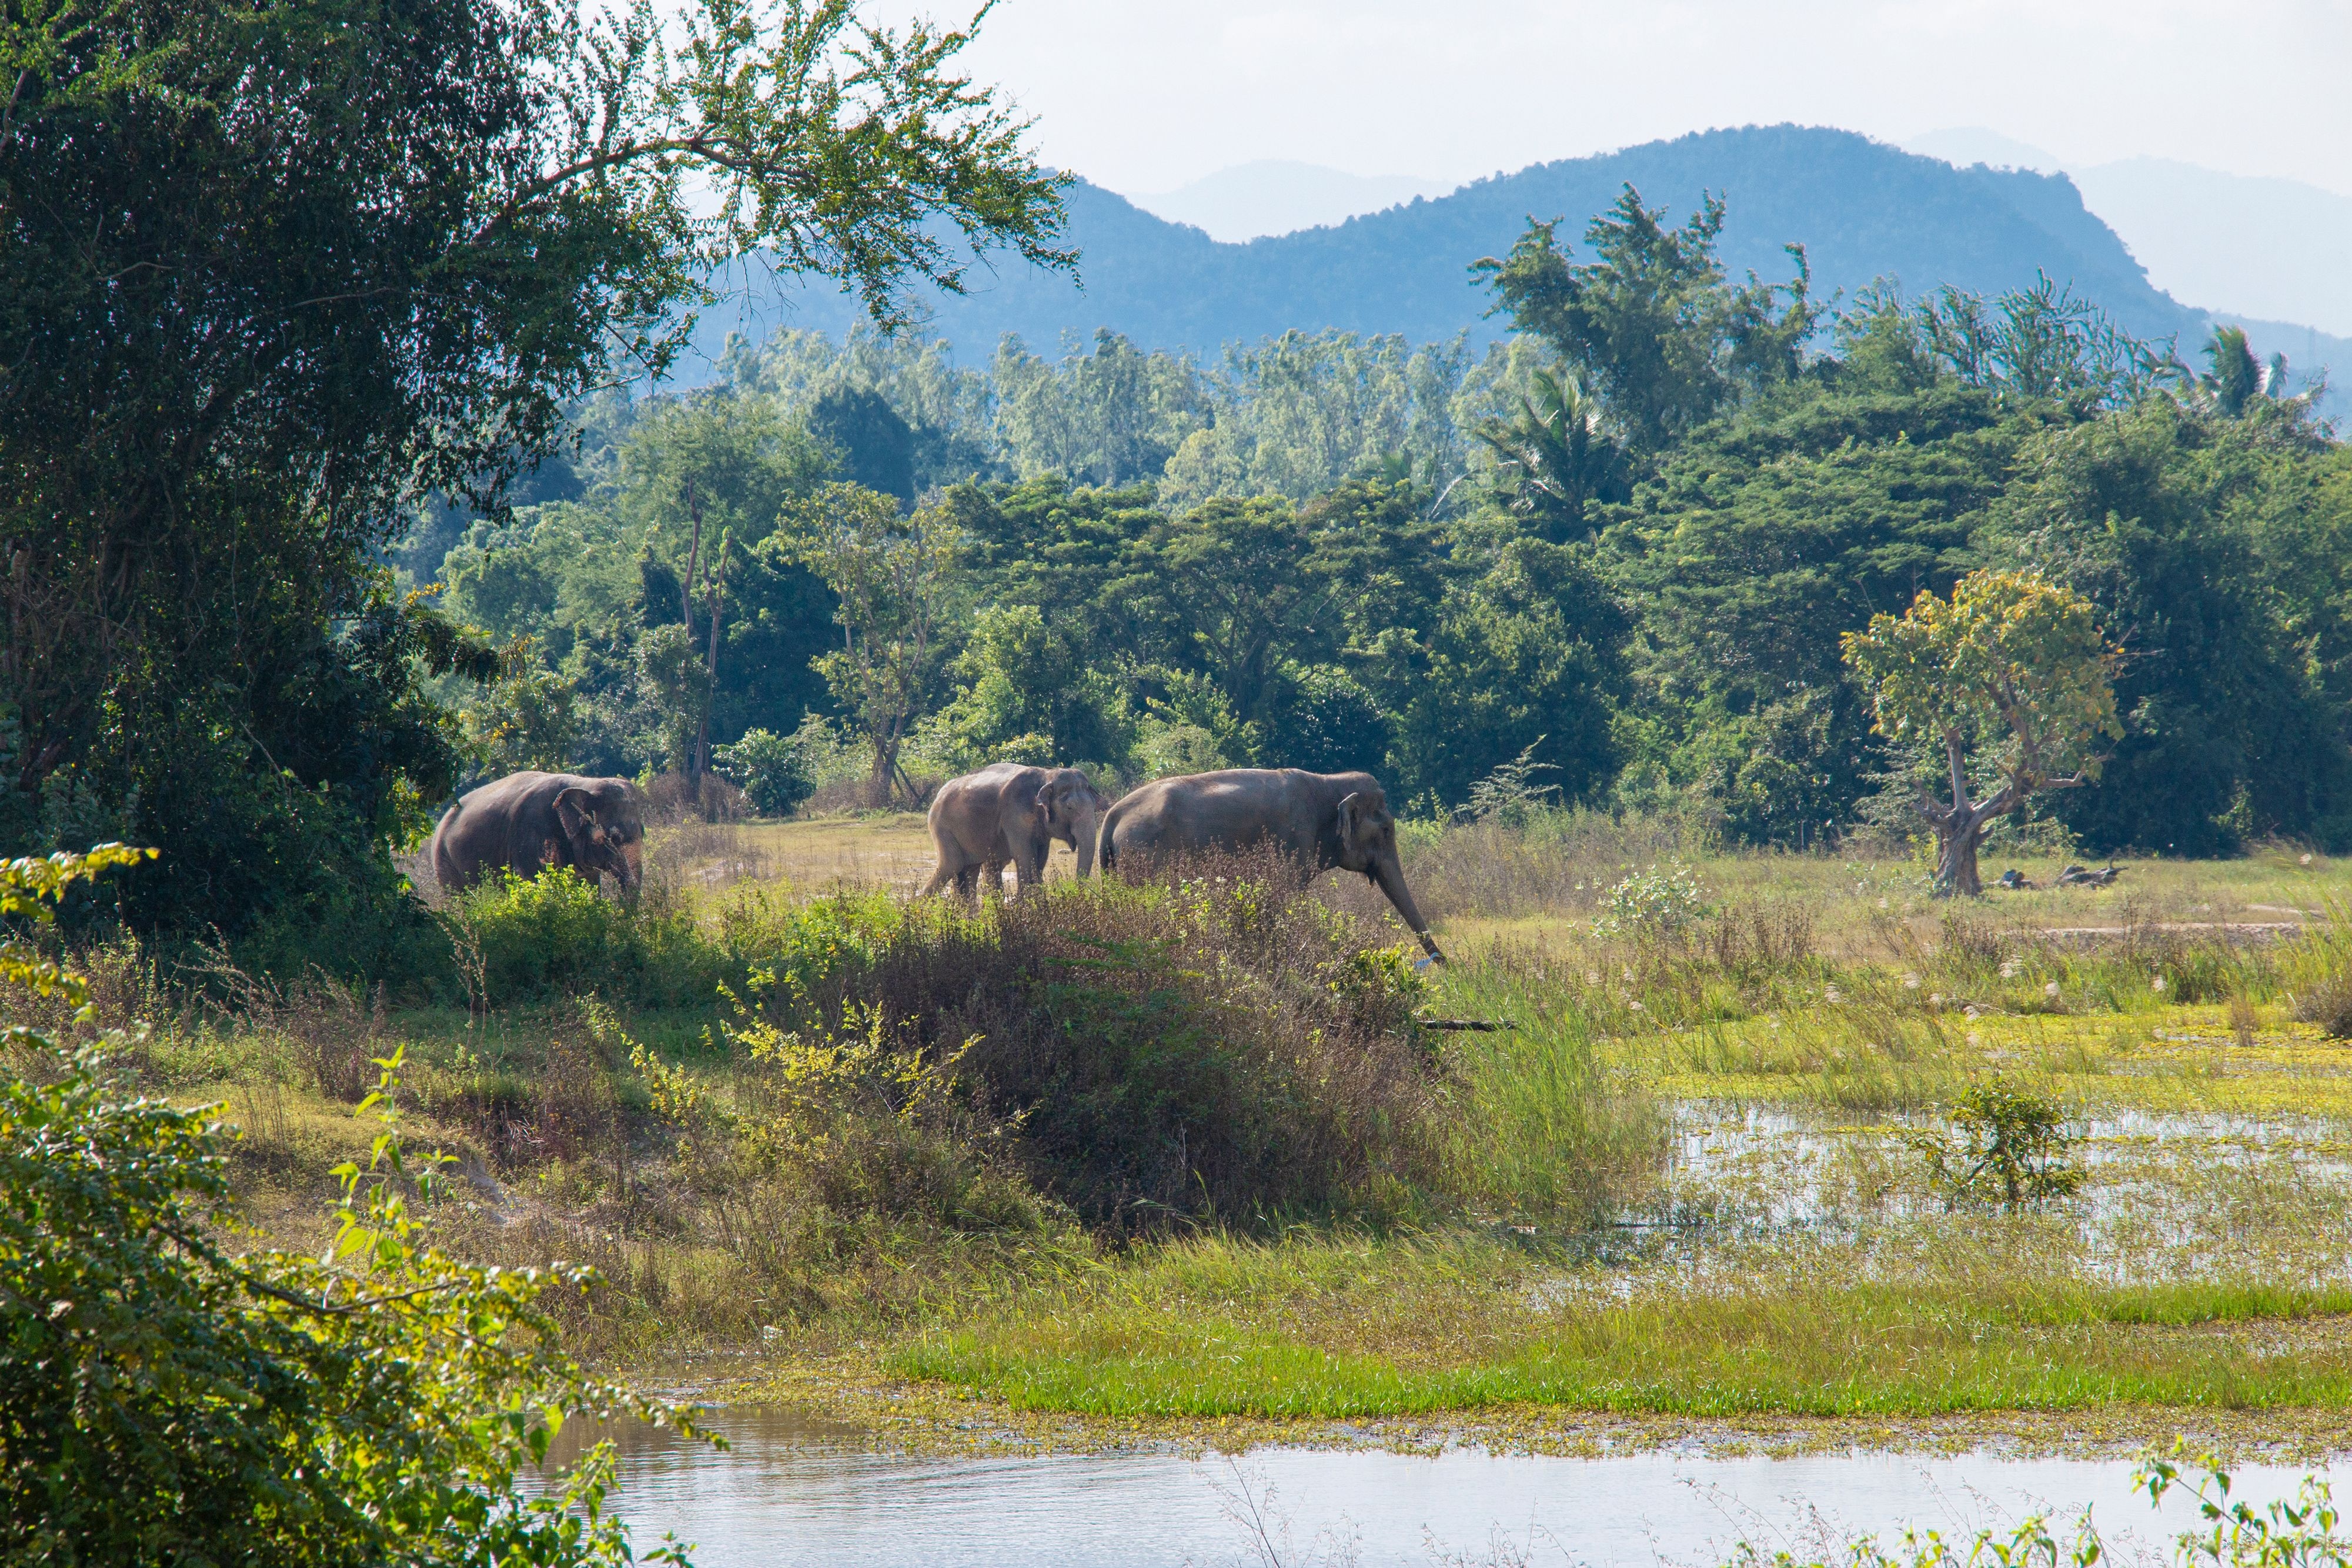 Elephants in a field.